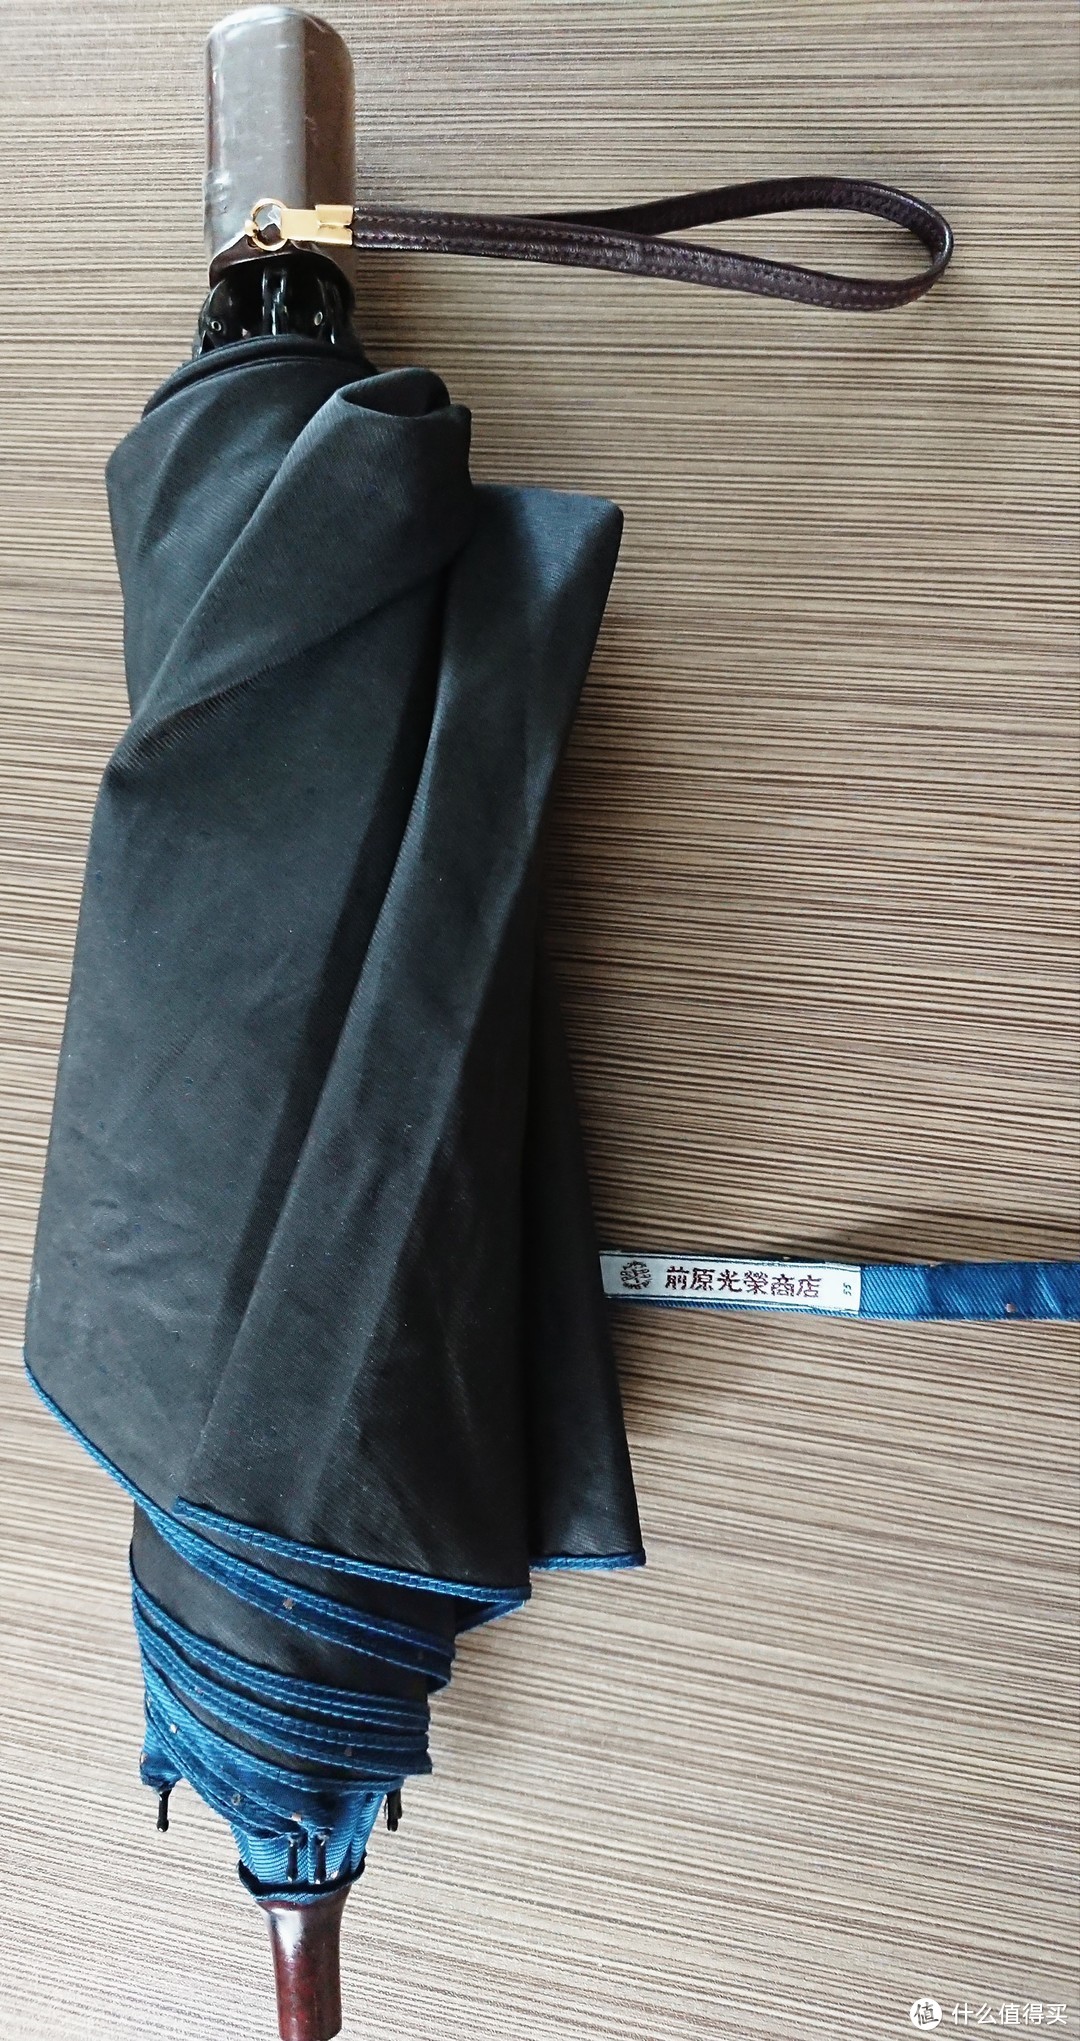 伞面和伞套据说都是用富士山麓某工厂的传统面料手工裁制而成，手感明细比其它量产型伞厚实，不过也带来了一些弊端，具体后面说。